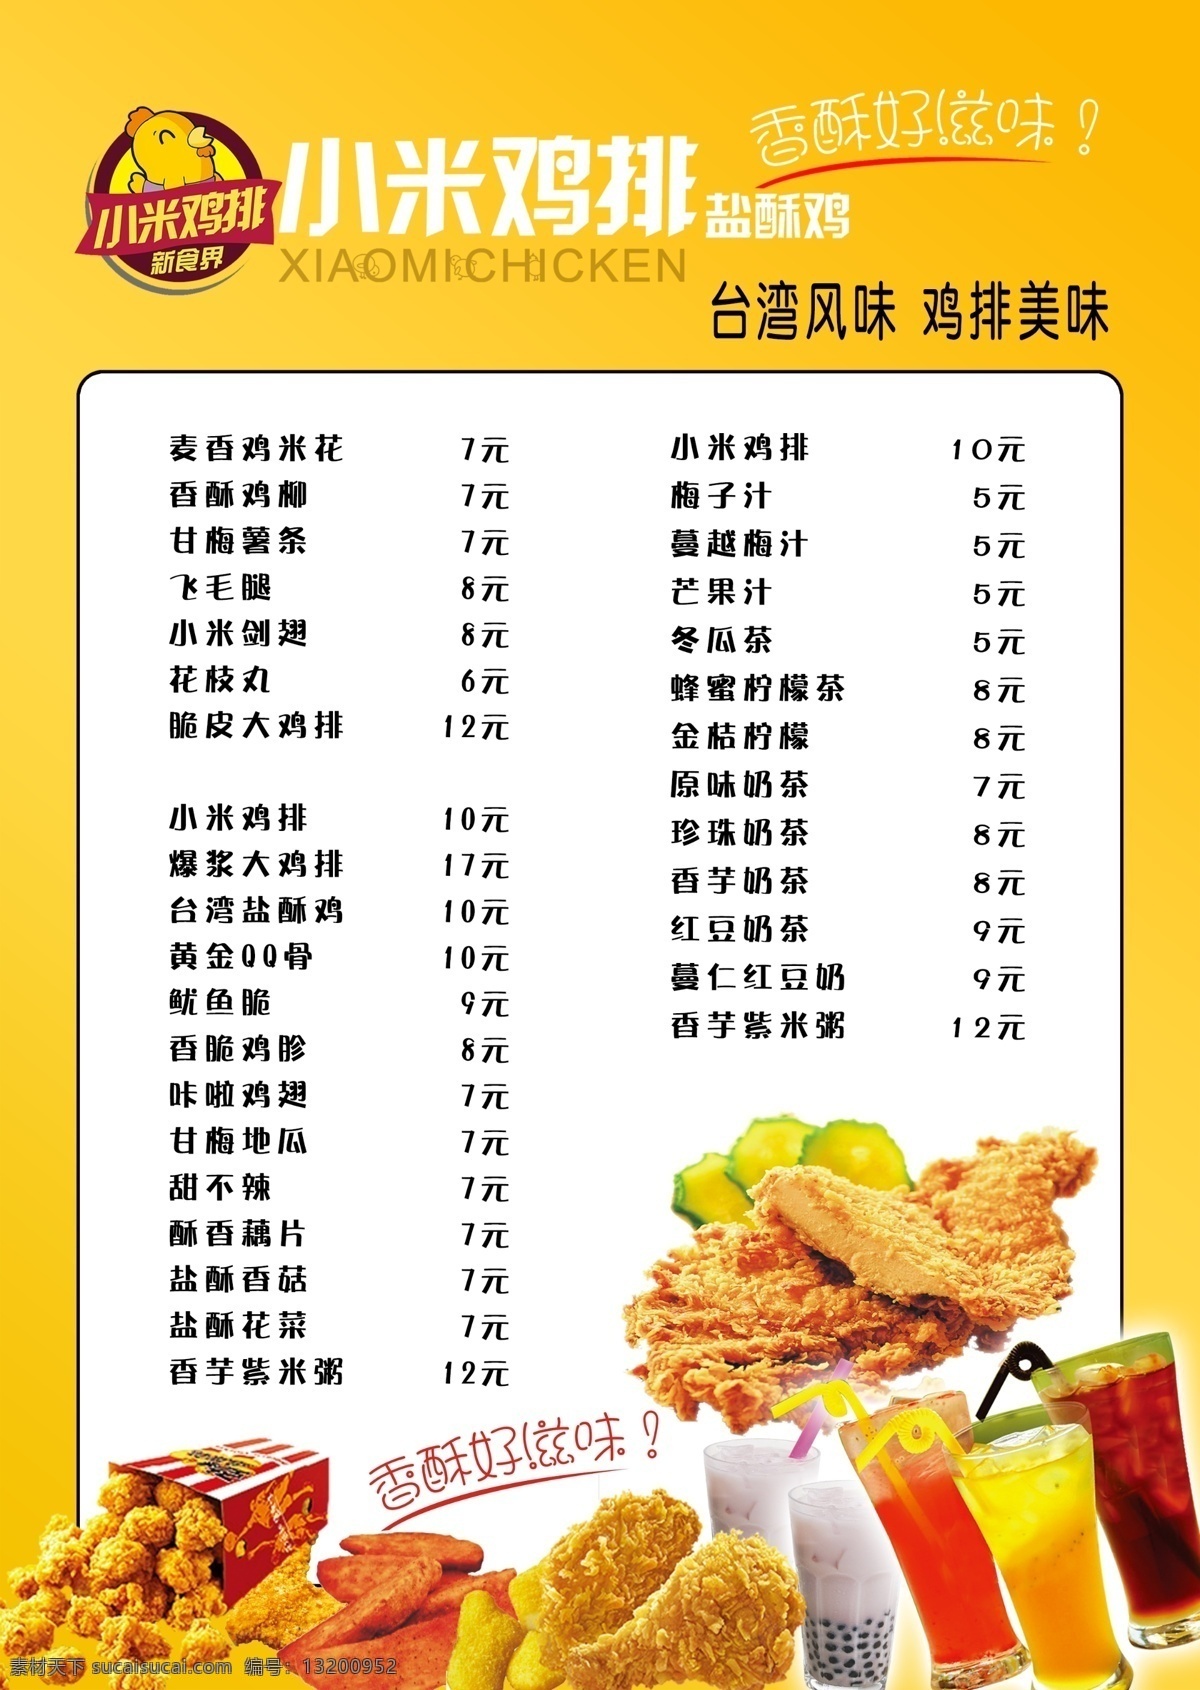 小米鸡排菜单 小米鸡排 菜单 汉堡 鸡翅 薯条 鸡排 饮料 果汁 奶茶 广告彩页 菜单菜谱